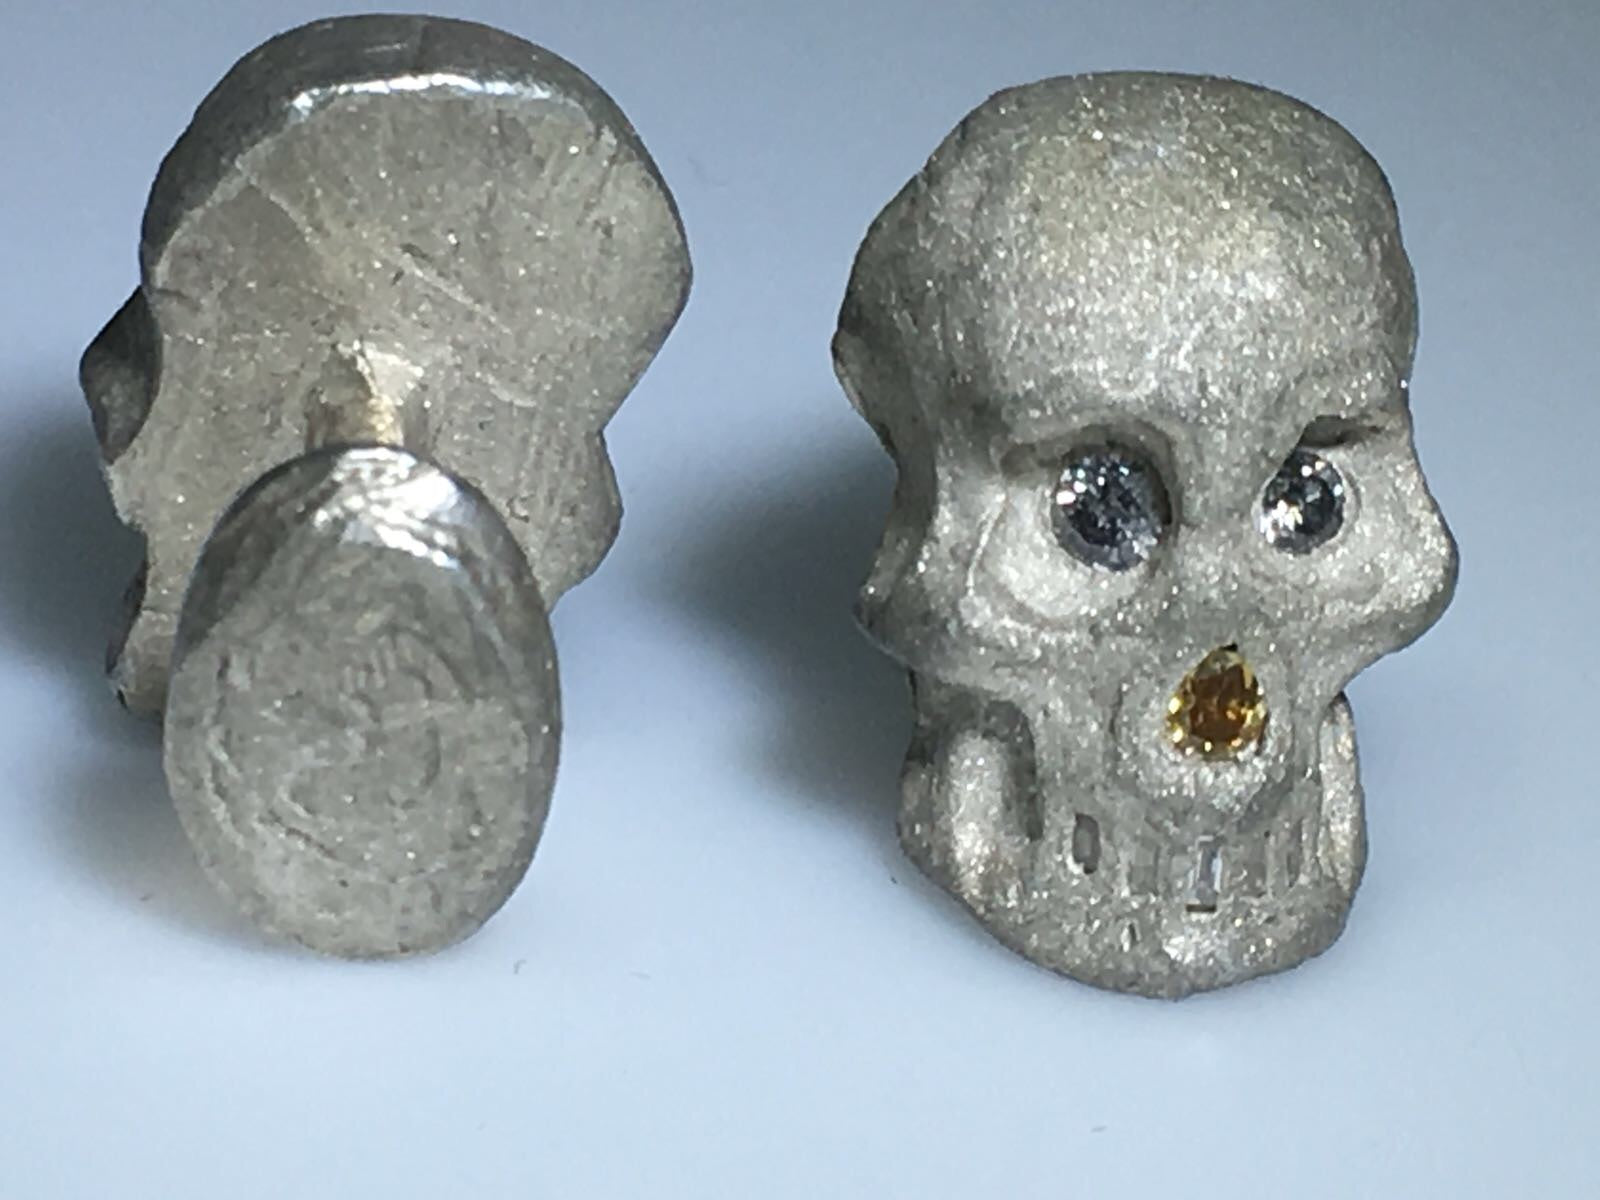 Sterling Silver Diamond Skull Cufflinks